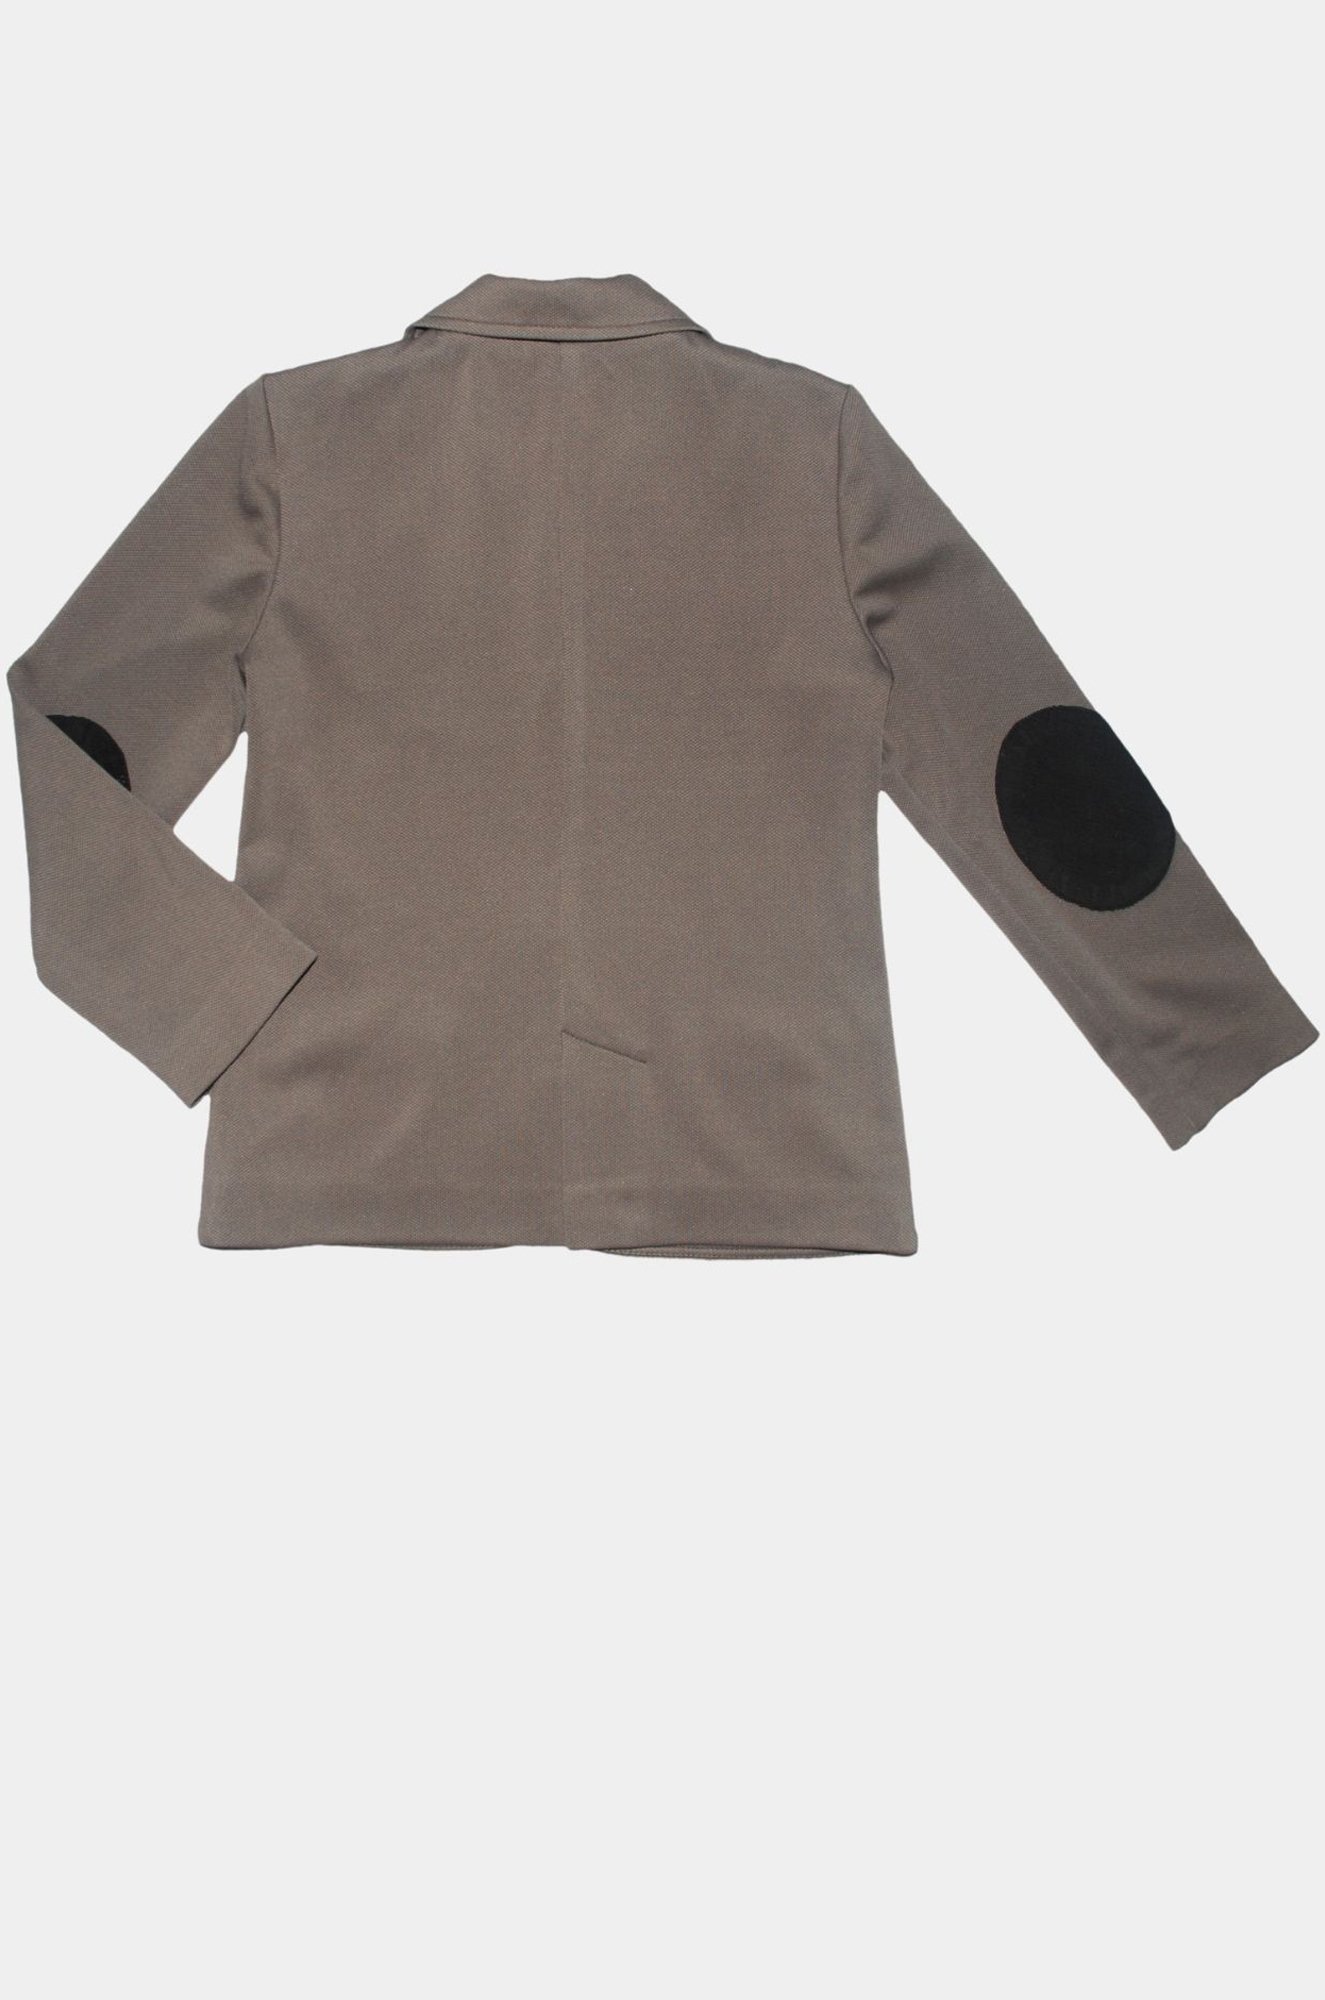 Пиджак для мальчика Bon&Bon luxury collection